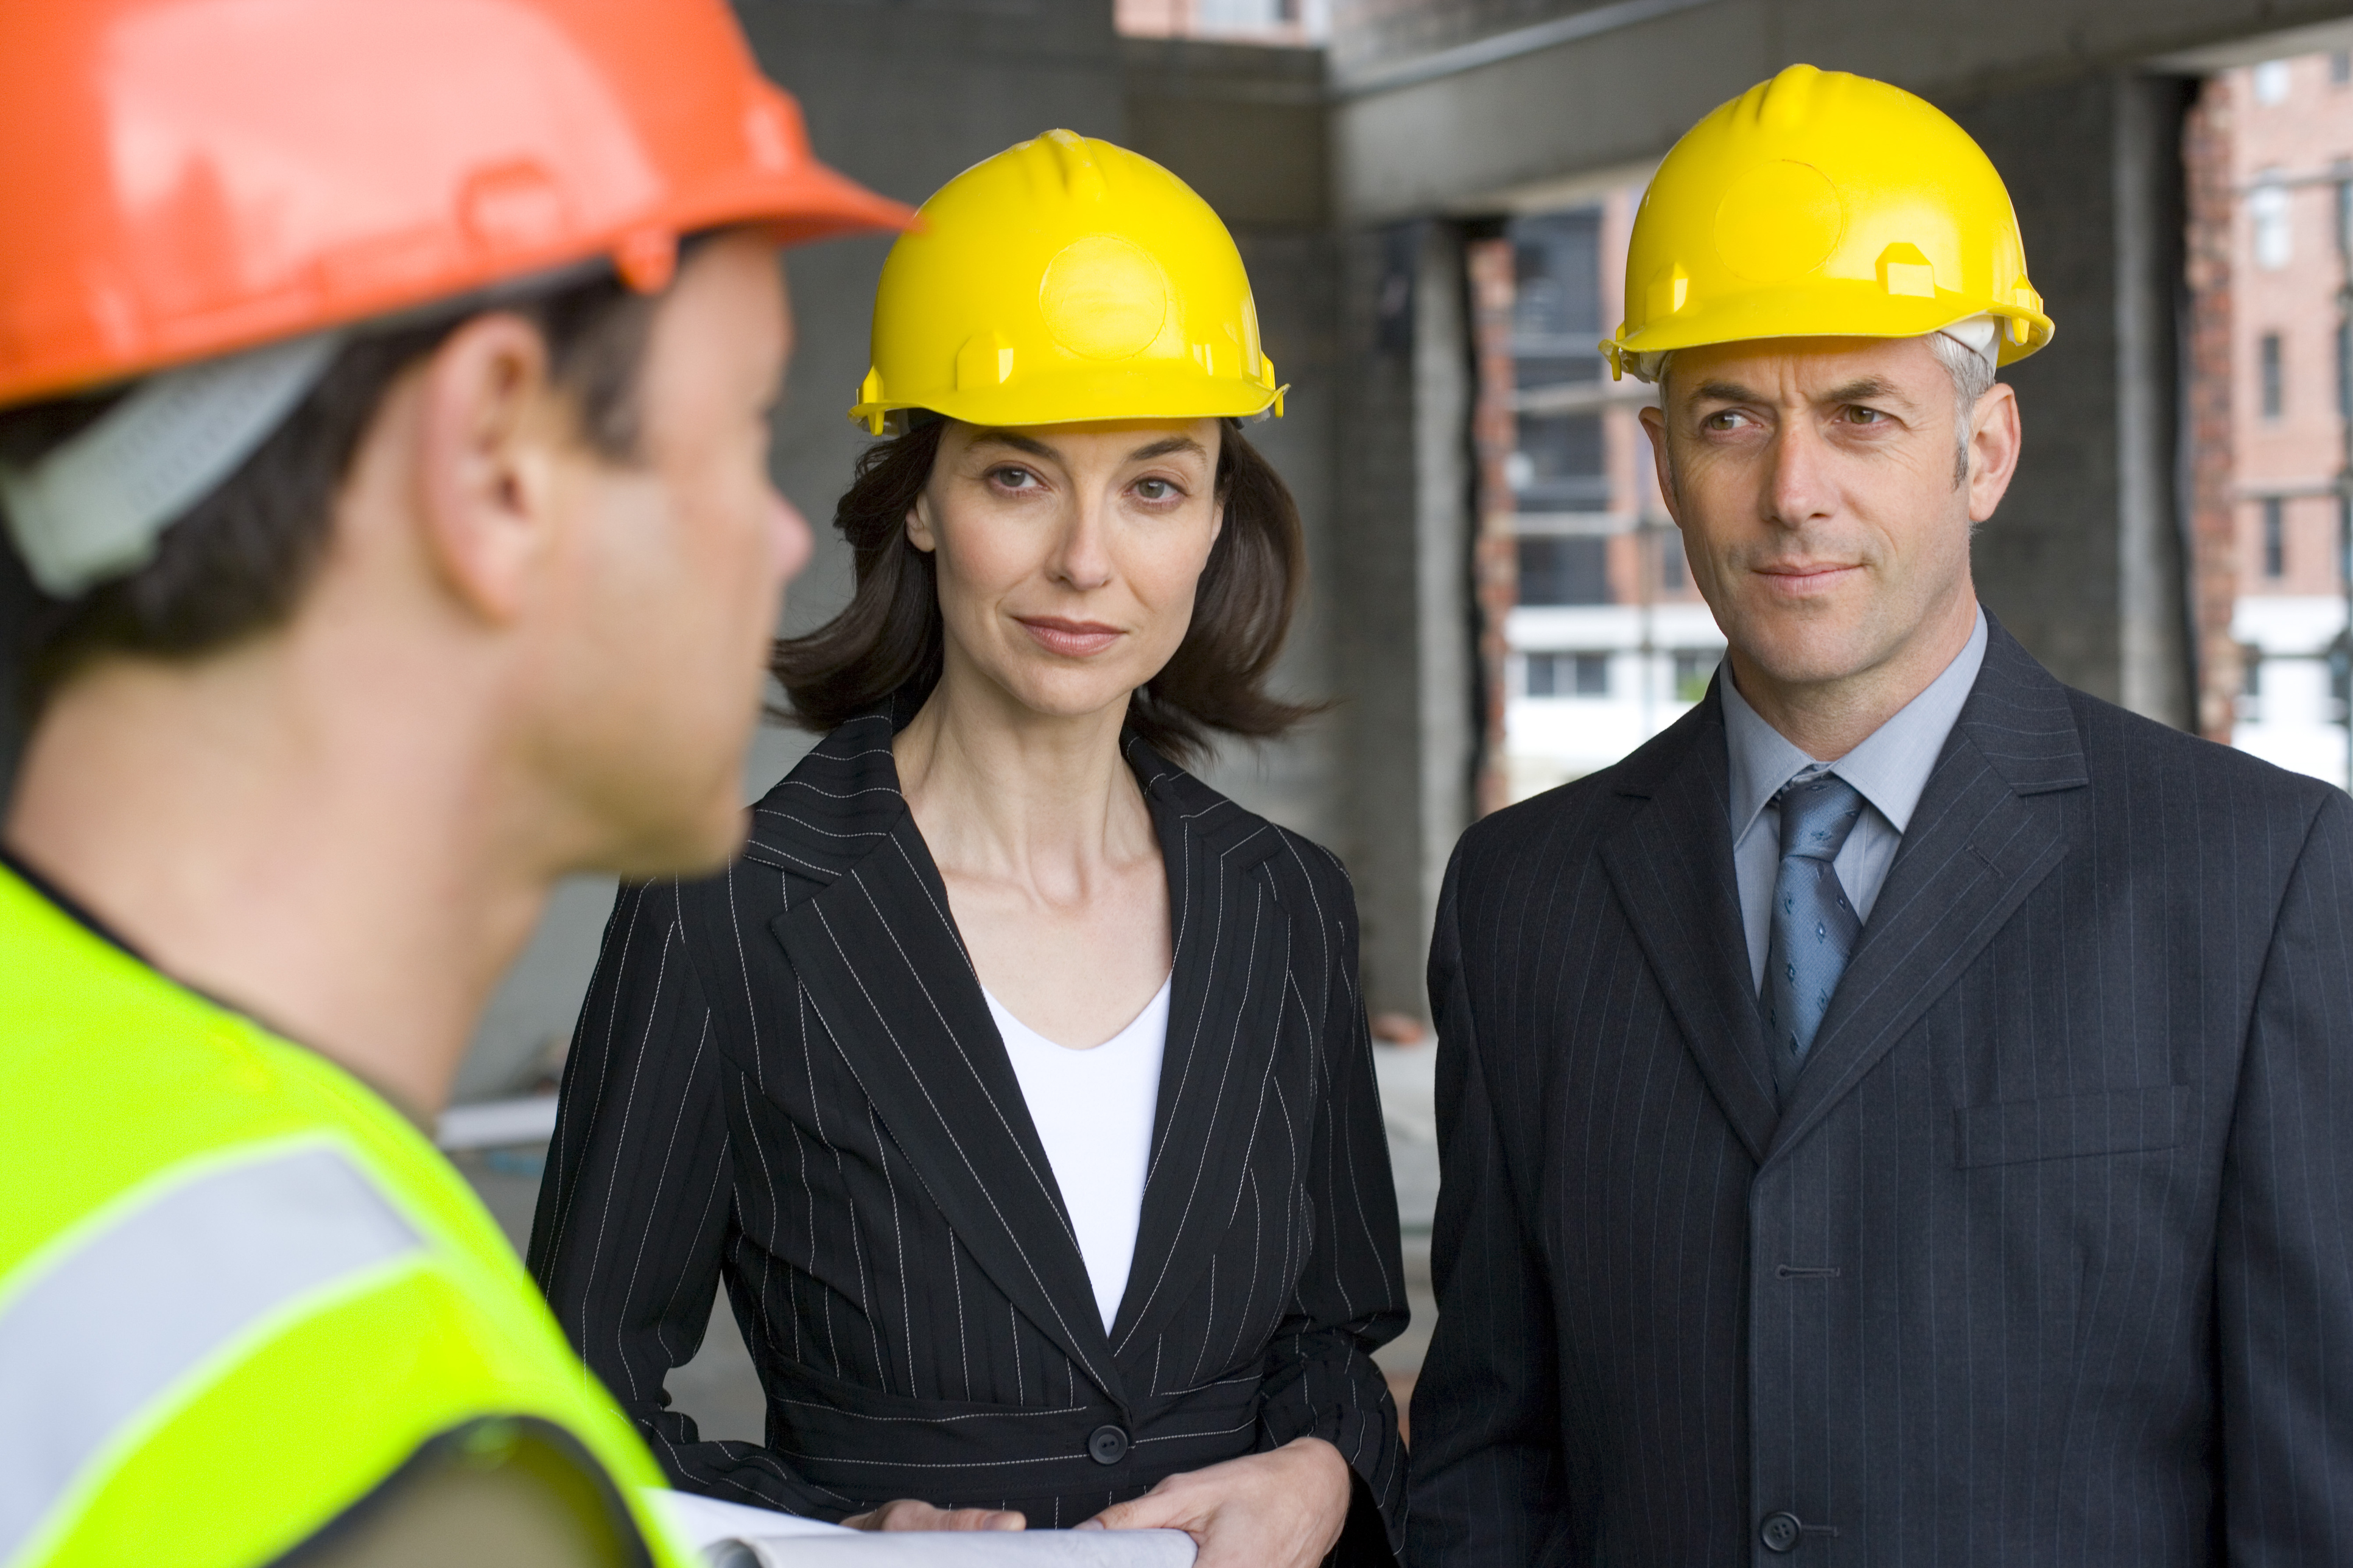 construction labor market, construction contractors, contractors candidates, contractors jobs